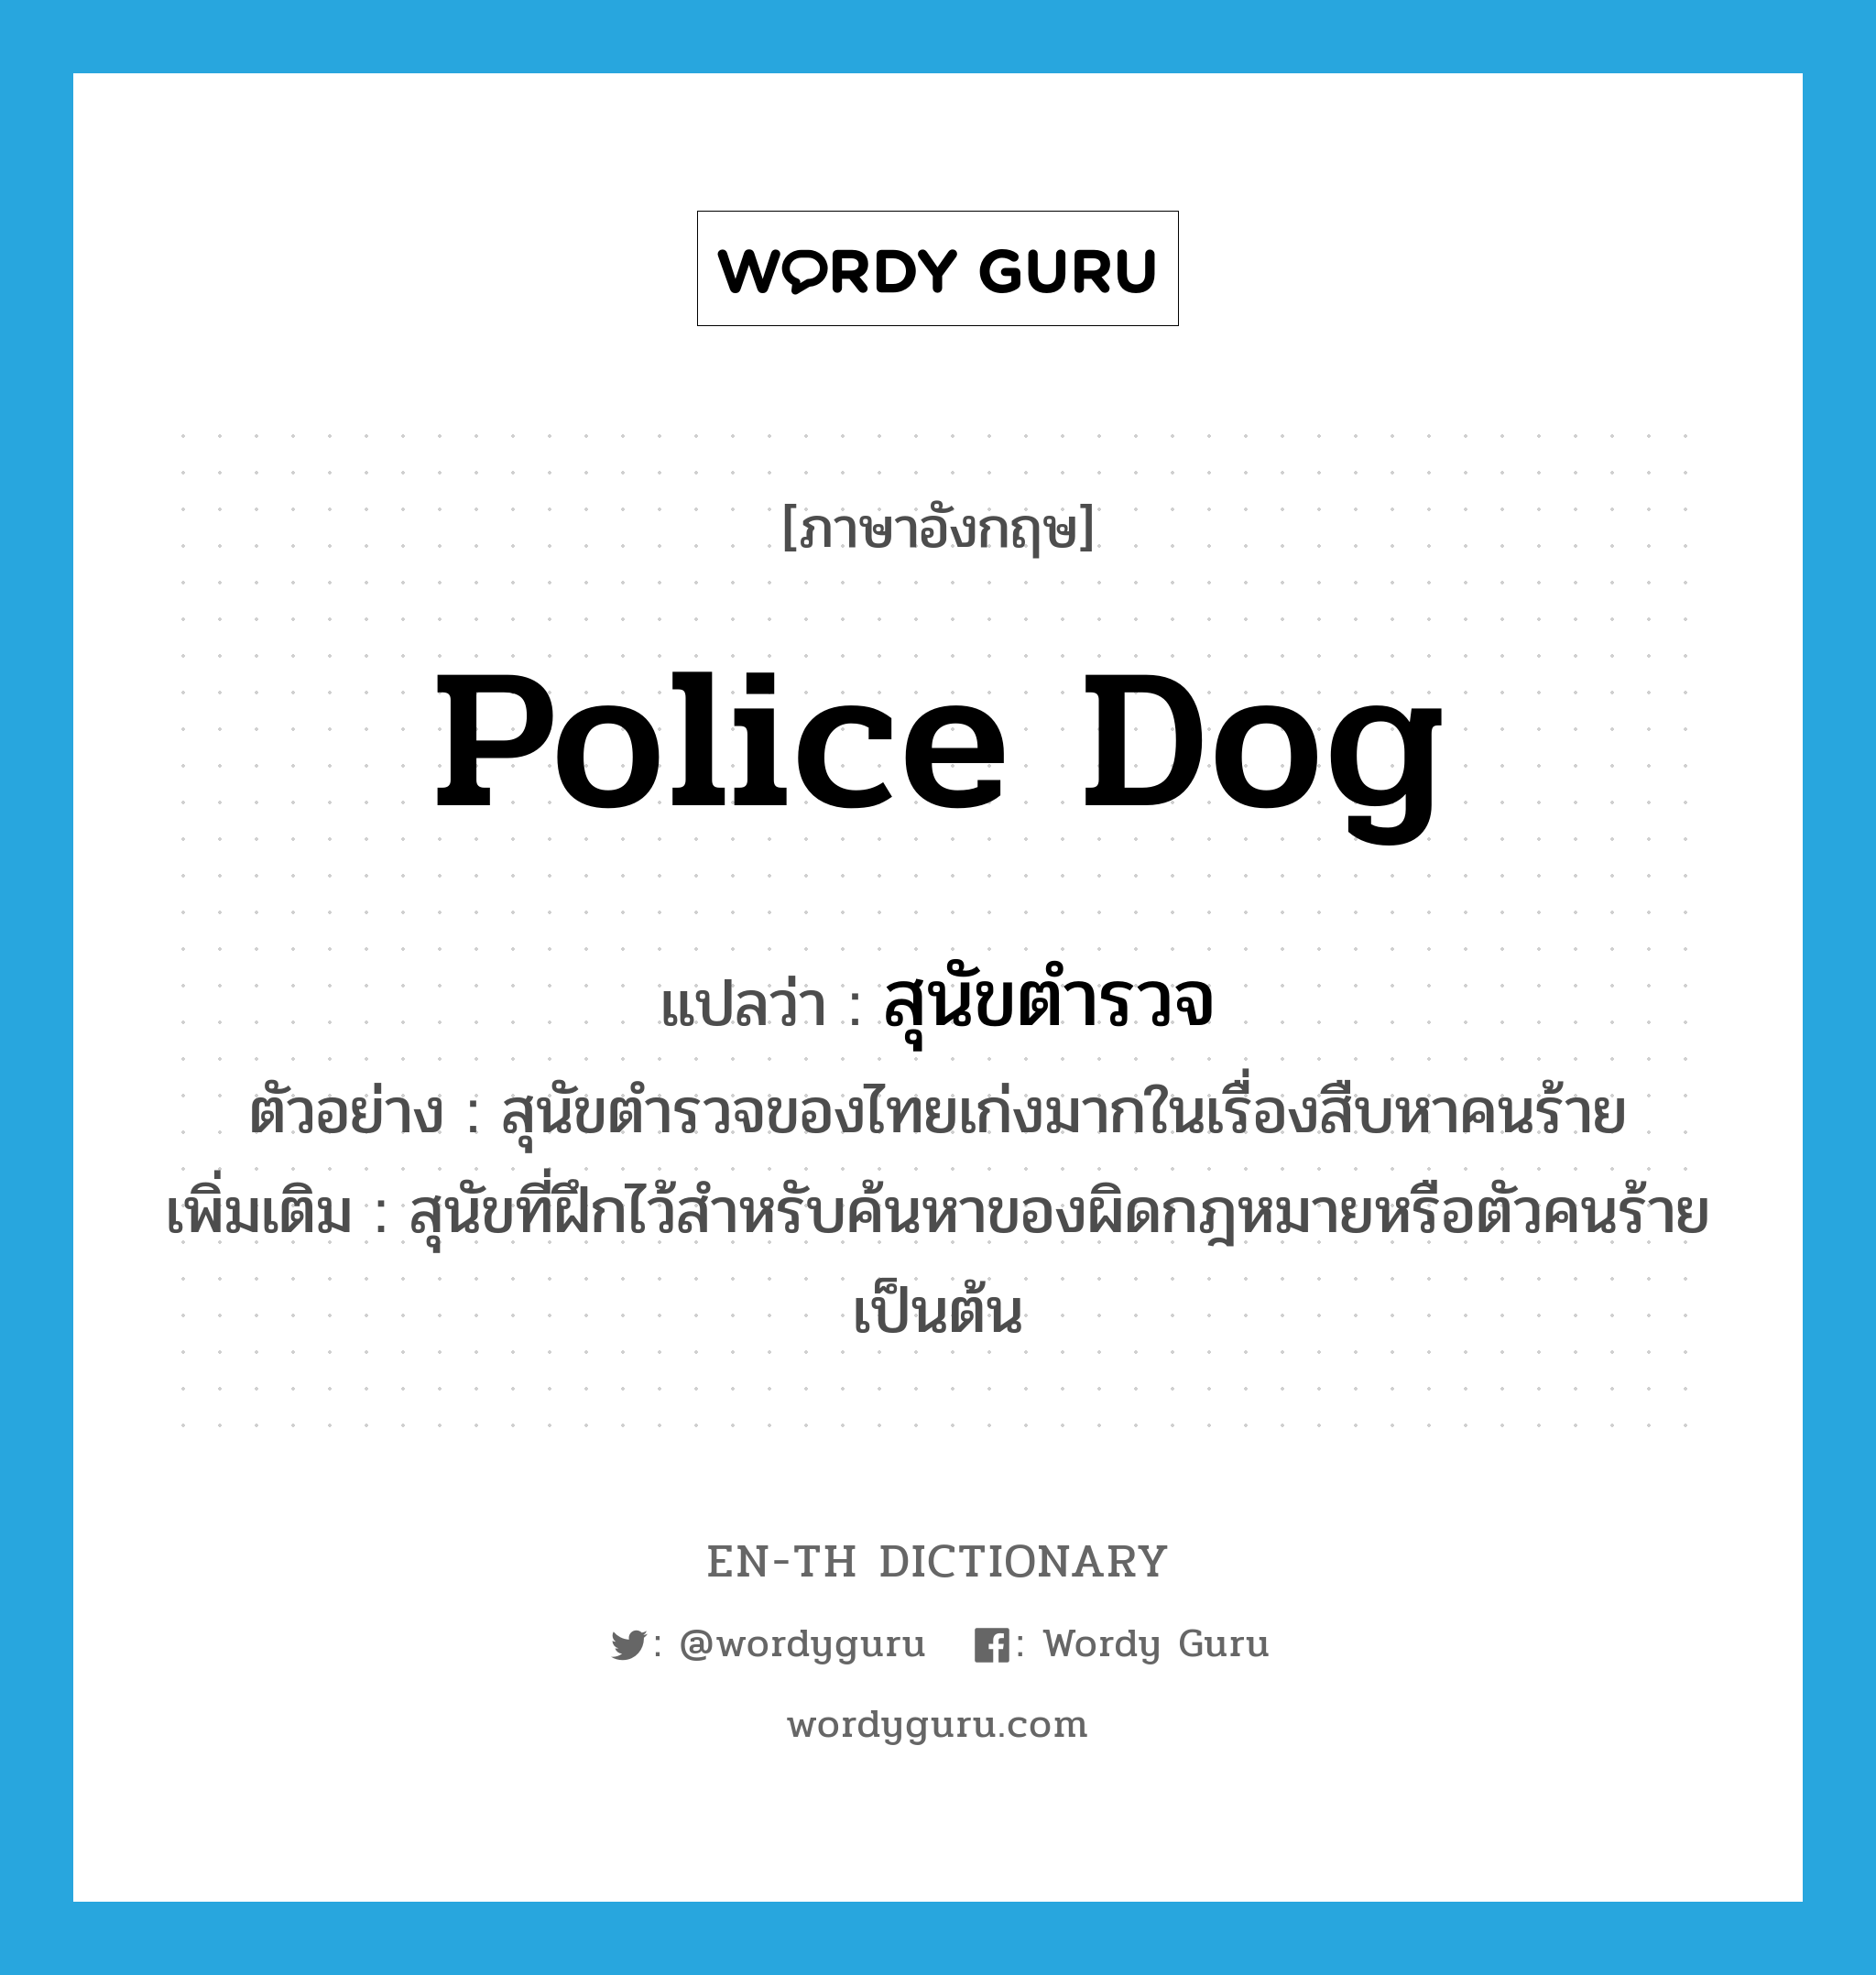 สุนัขตำรวจ ภาษาอังกฤษ?, คำศัพท์ภาษาอังกฤษ สุนัขตำรวจ แปลว่า police dog ประเภท N ตัวอย่าง สุนัขตำรวจของไทยเก่งมากในเรื่องสืบหาคนร้าย เพิ่มเติม สุนัขที่ฝึกไว้สำหรับค้นหาของผิดกฎหมายหรือตัวคนร้ายเป็นต้น หมวด N